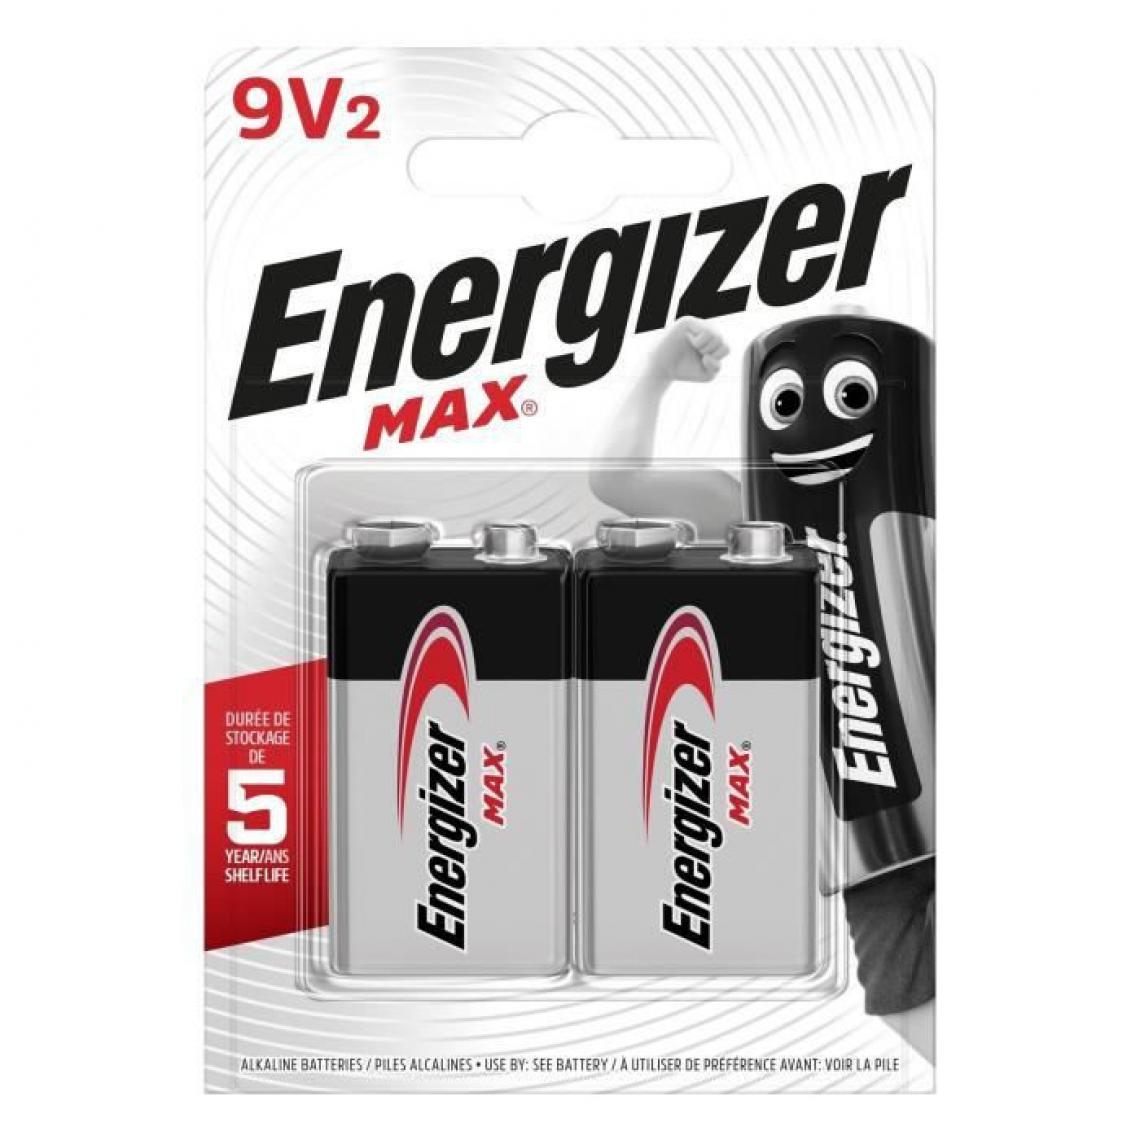 Energizer - Piles Alcalines Energizer Max 9V, pack de 2 - Piles rechargeables